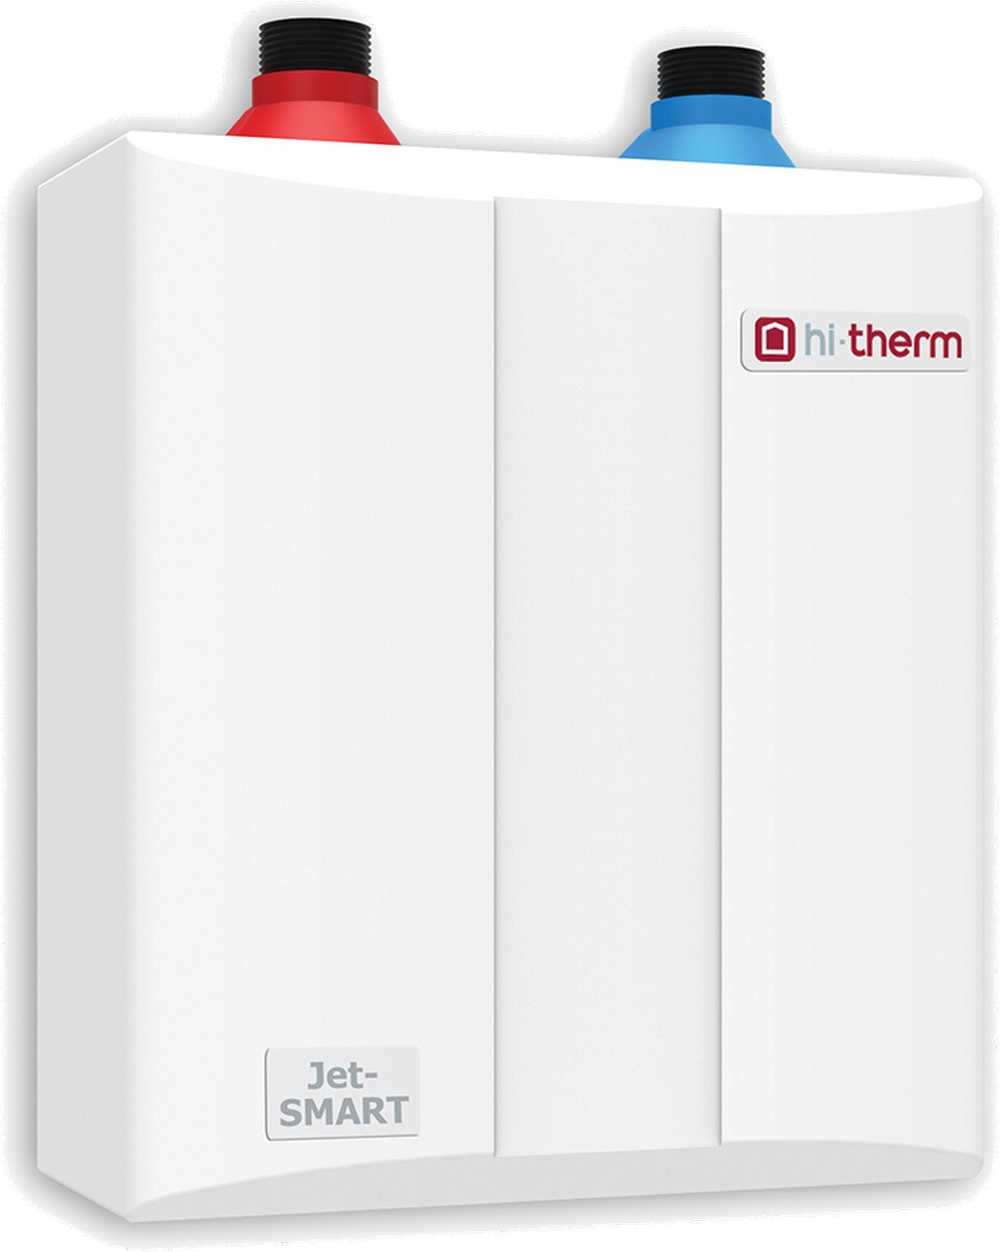 Безнапорный проточный водонагреватель Hi-Therm JET-SMART 5.5